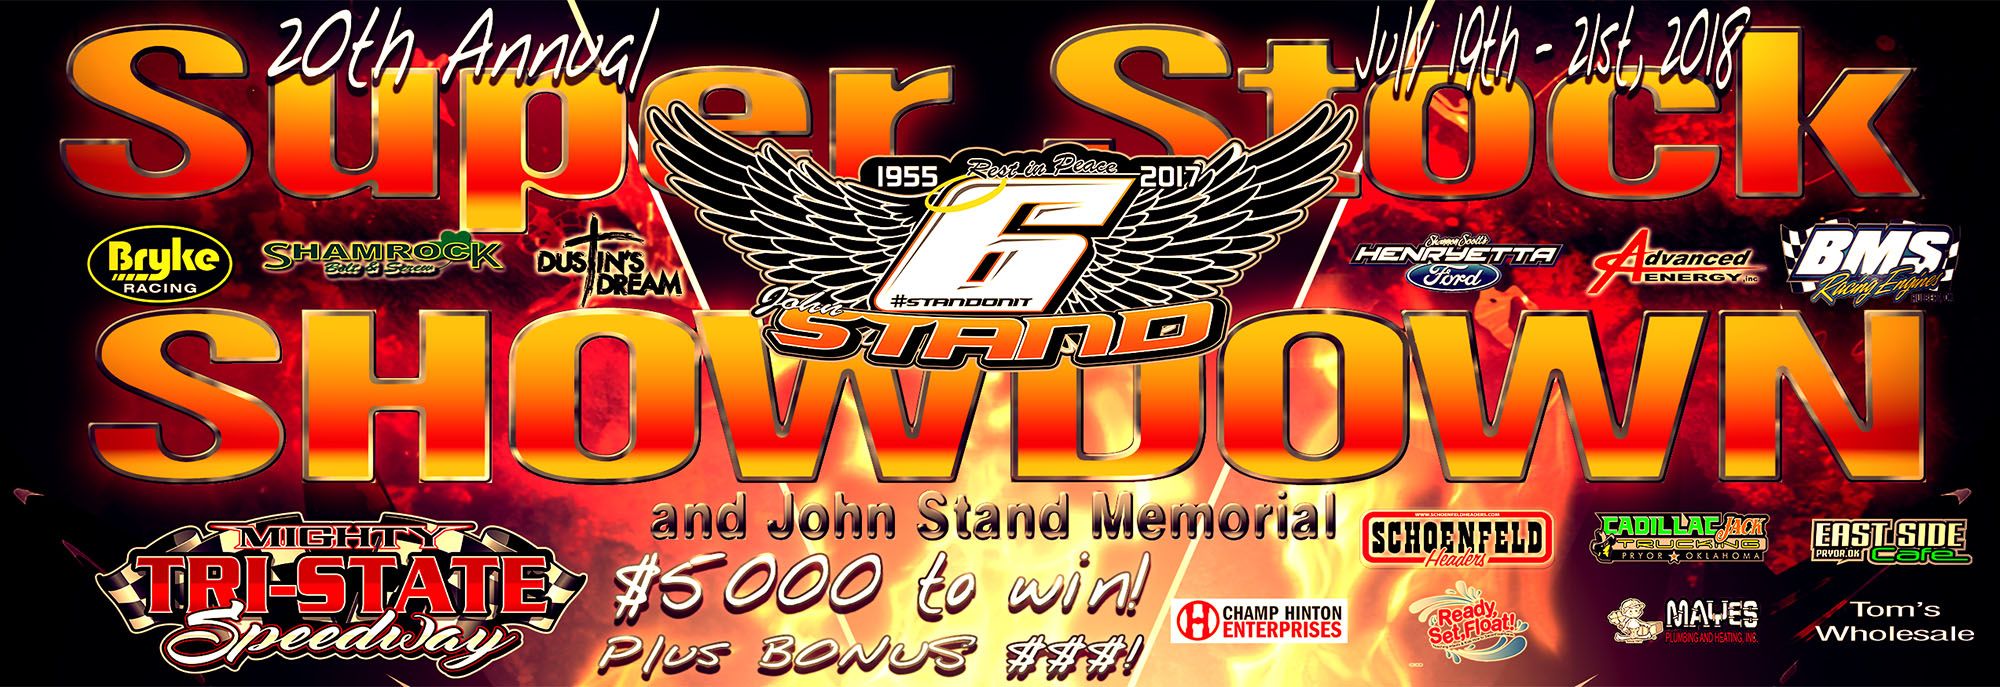 20th Annual Super Stock Showdown & John Stand Memorial